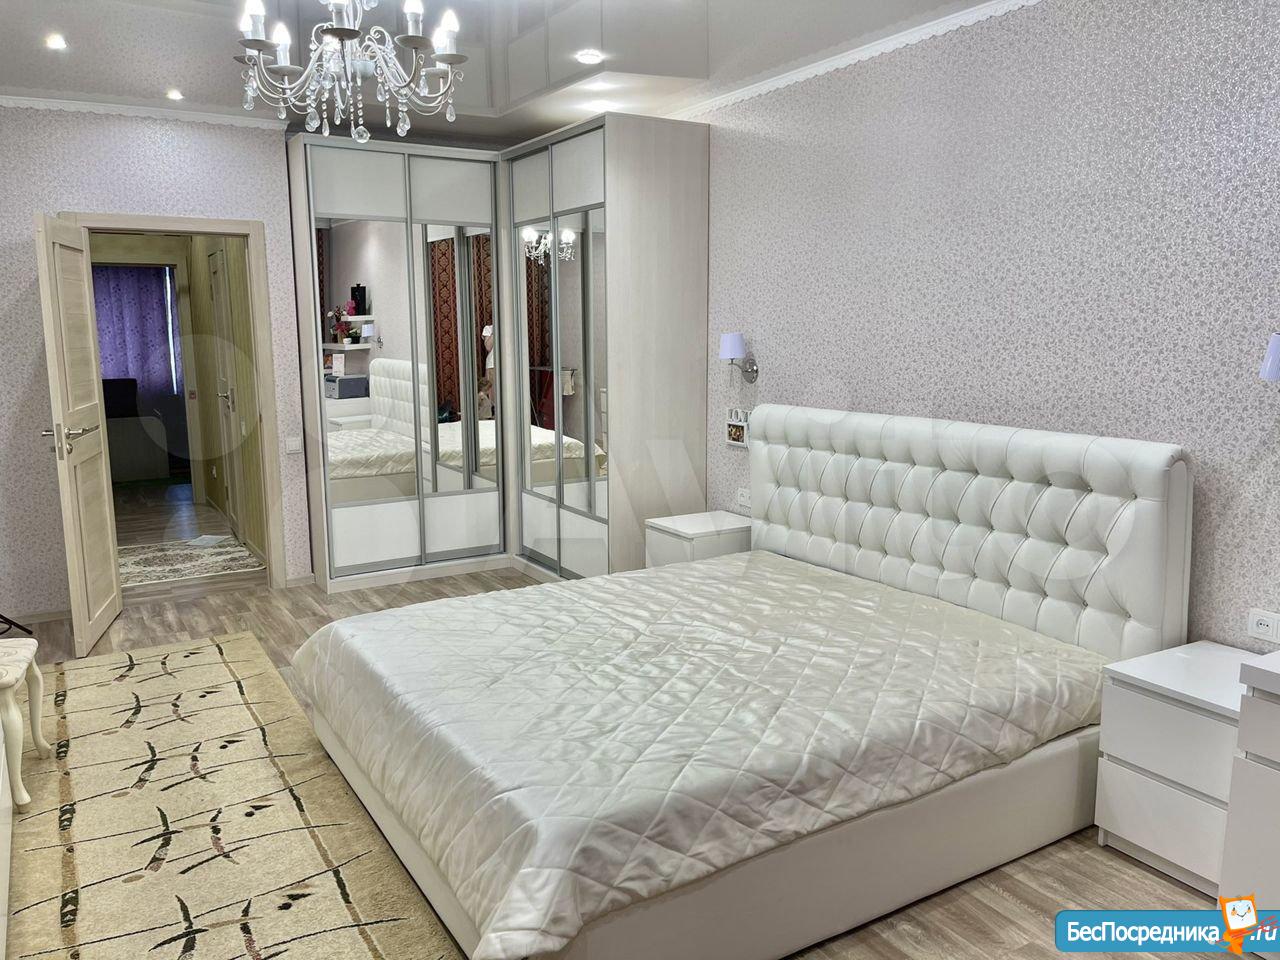 Снять квартиру в новокуйбышевске на длительный срок от собственника 1 комнатную с мебелью недорого